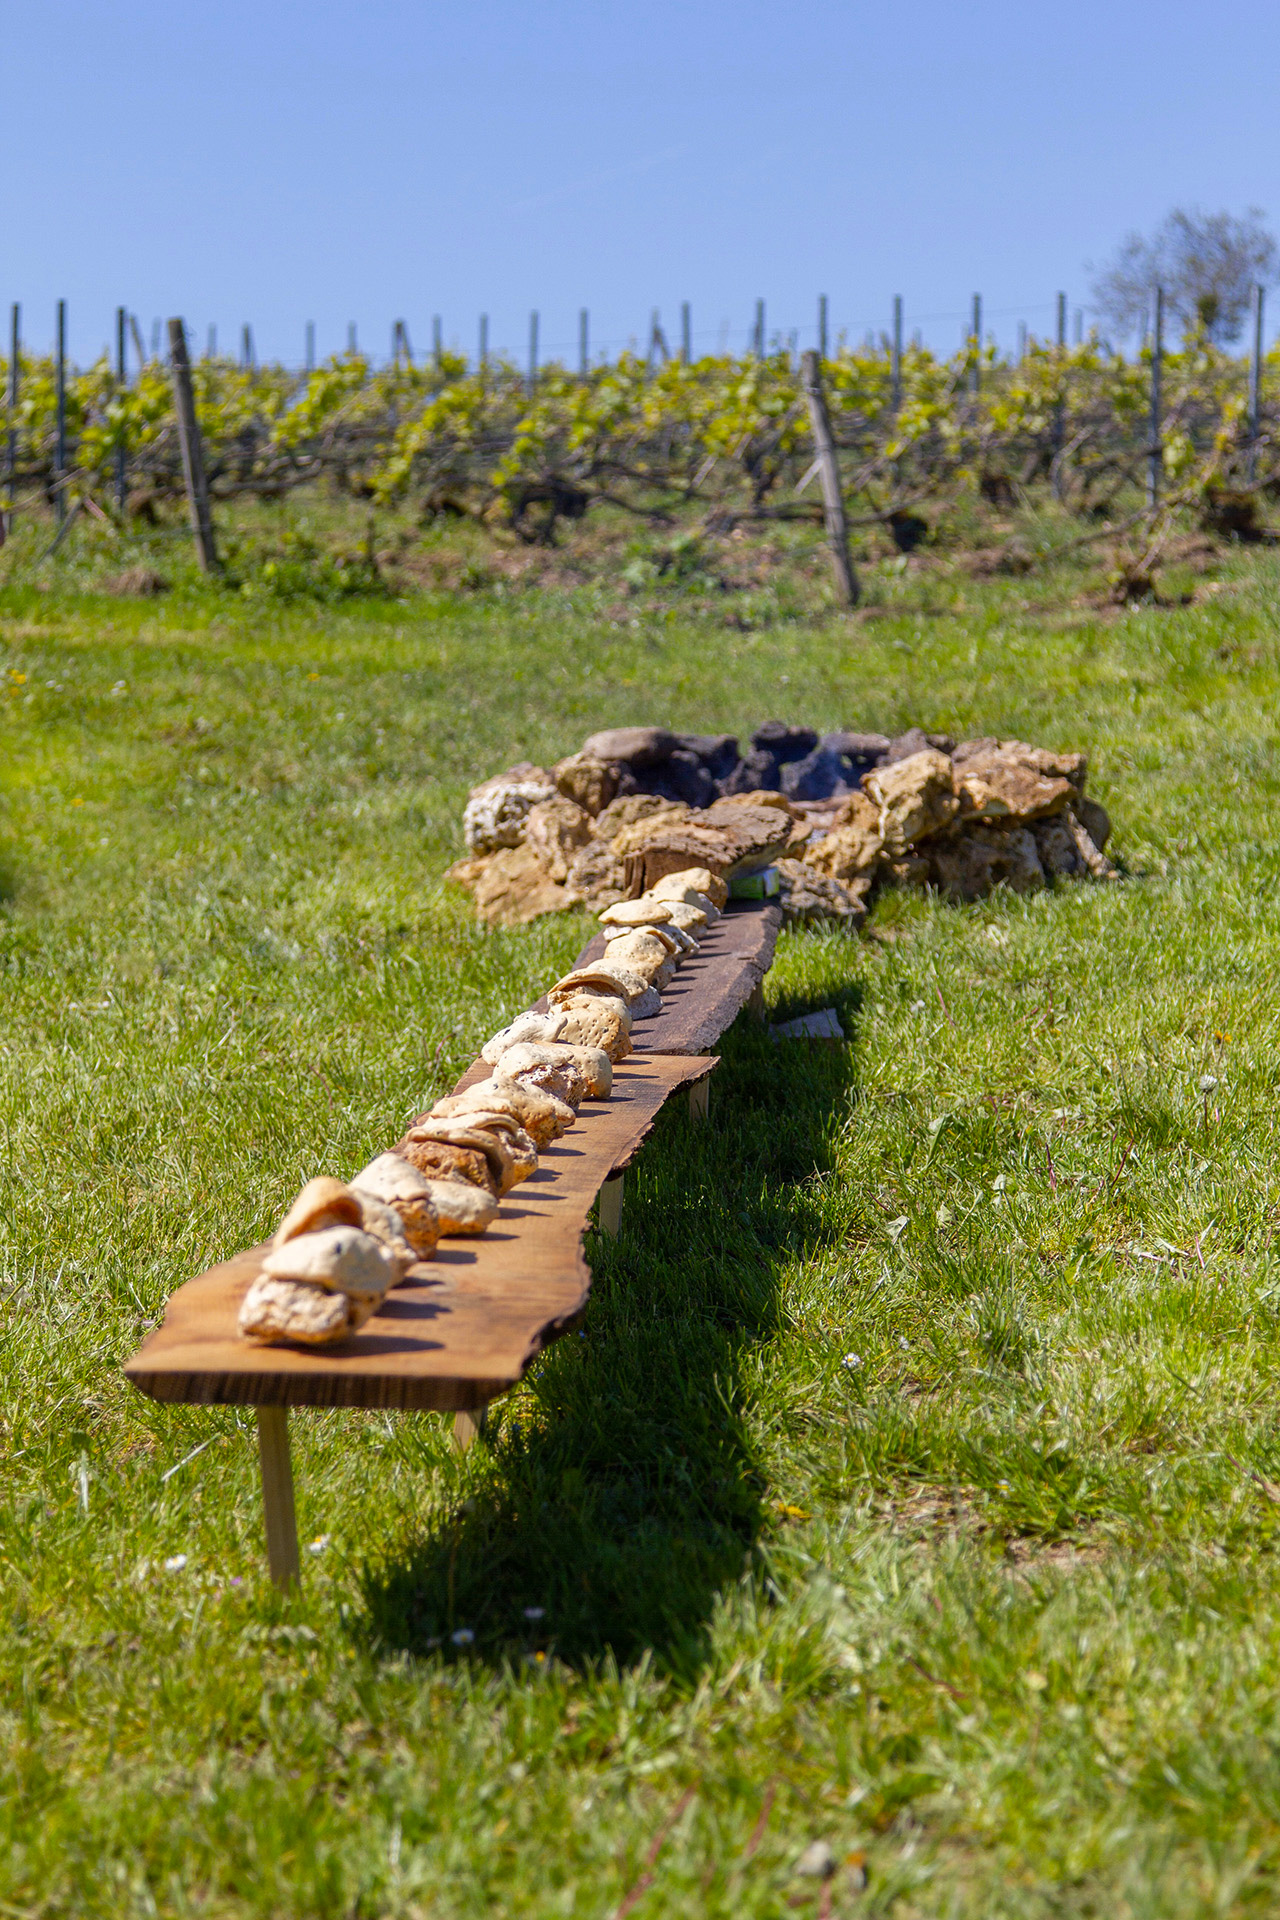 aire_food_banquet_scientifique_terres_commun_bread_cooking_outside